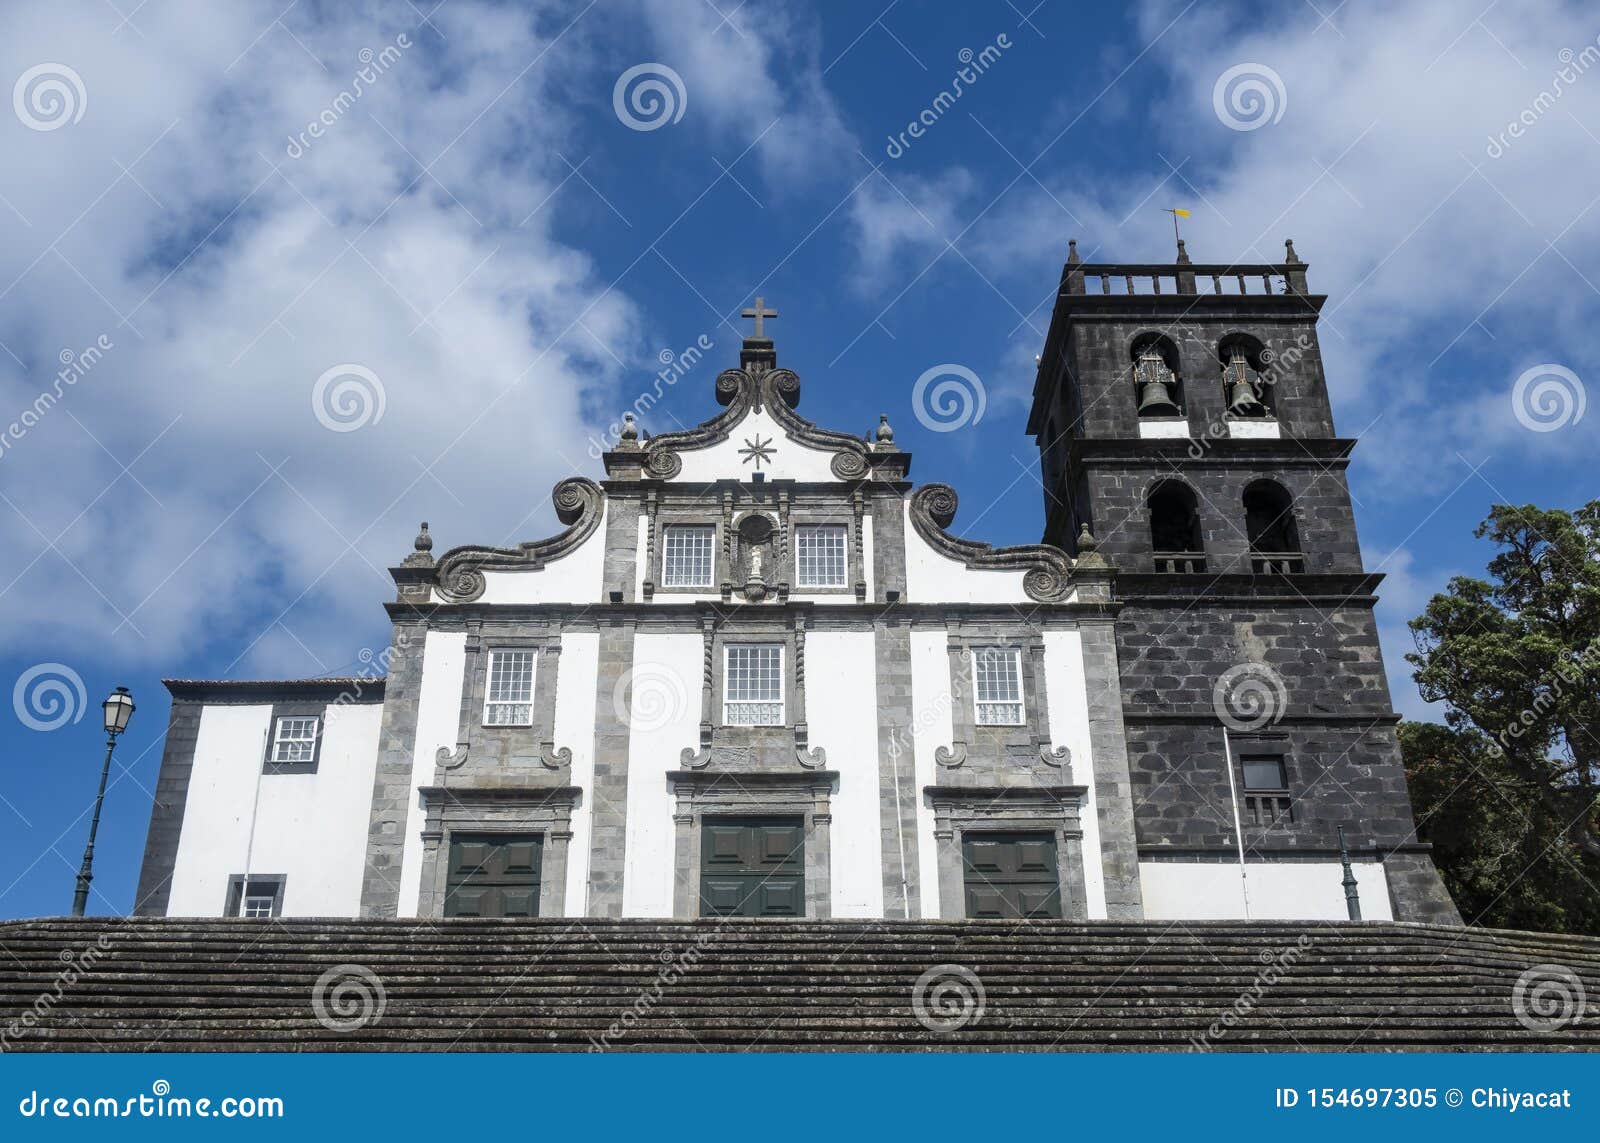 the facade of igreja matriz de nossa senhora da estrela  2